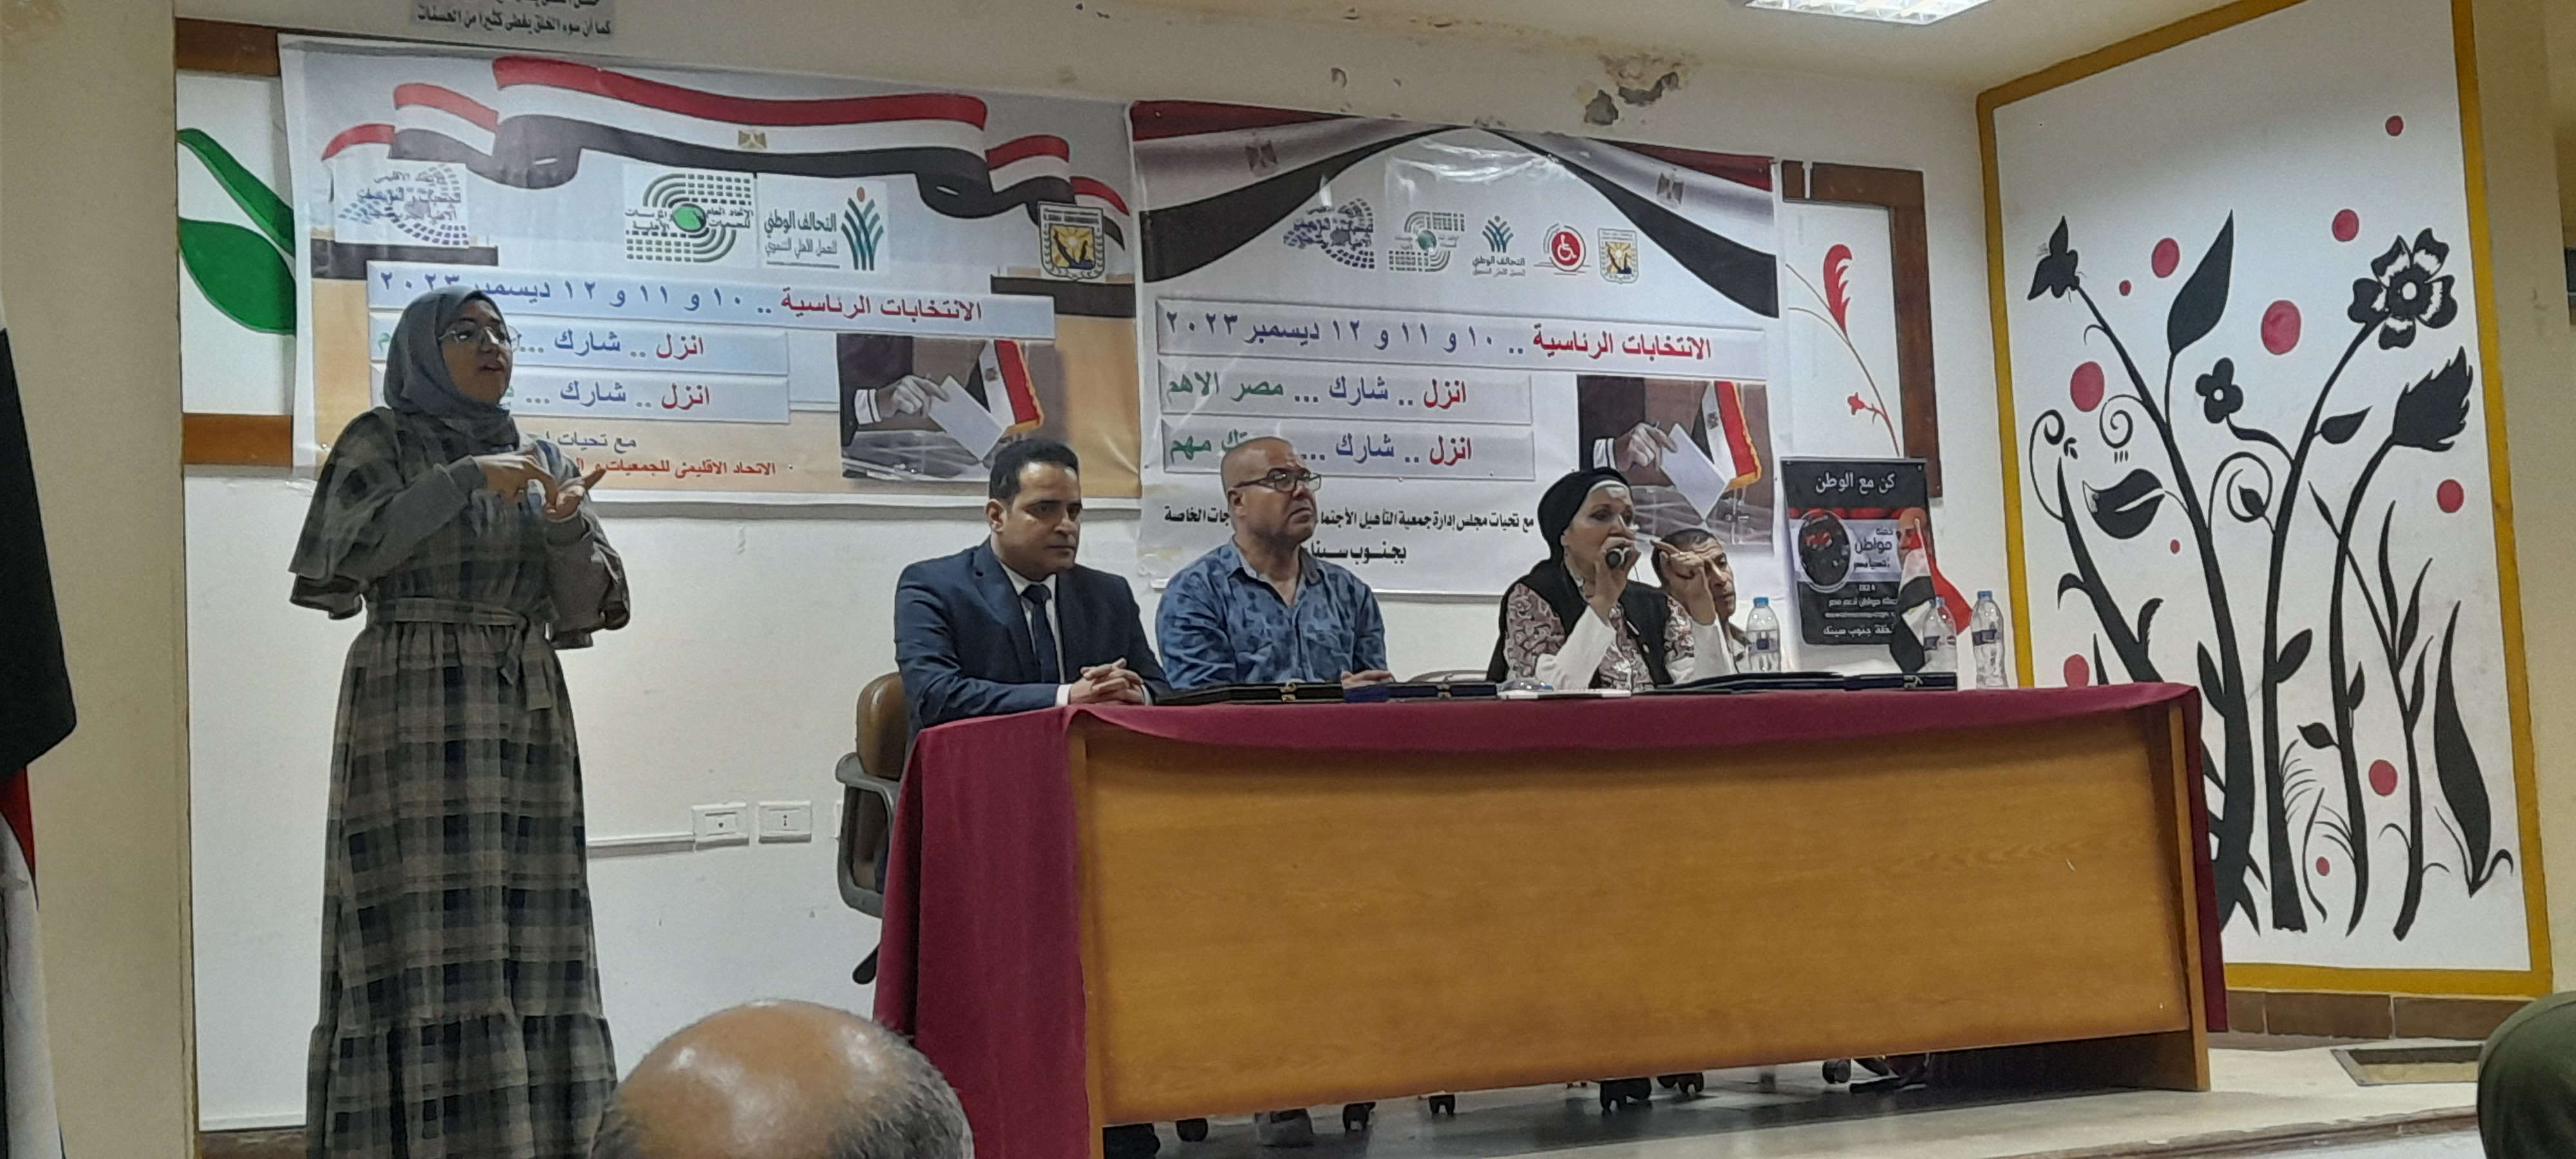 مؤتمر لدعم الرئيس السيسى فى جنوب سيناء (5) - Copy